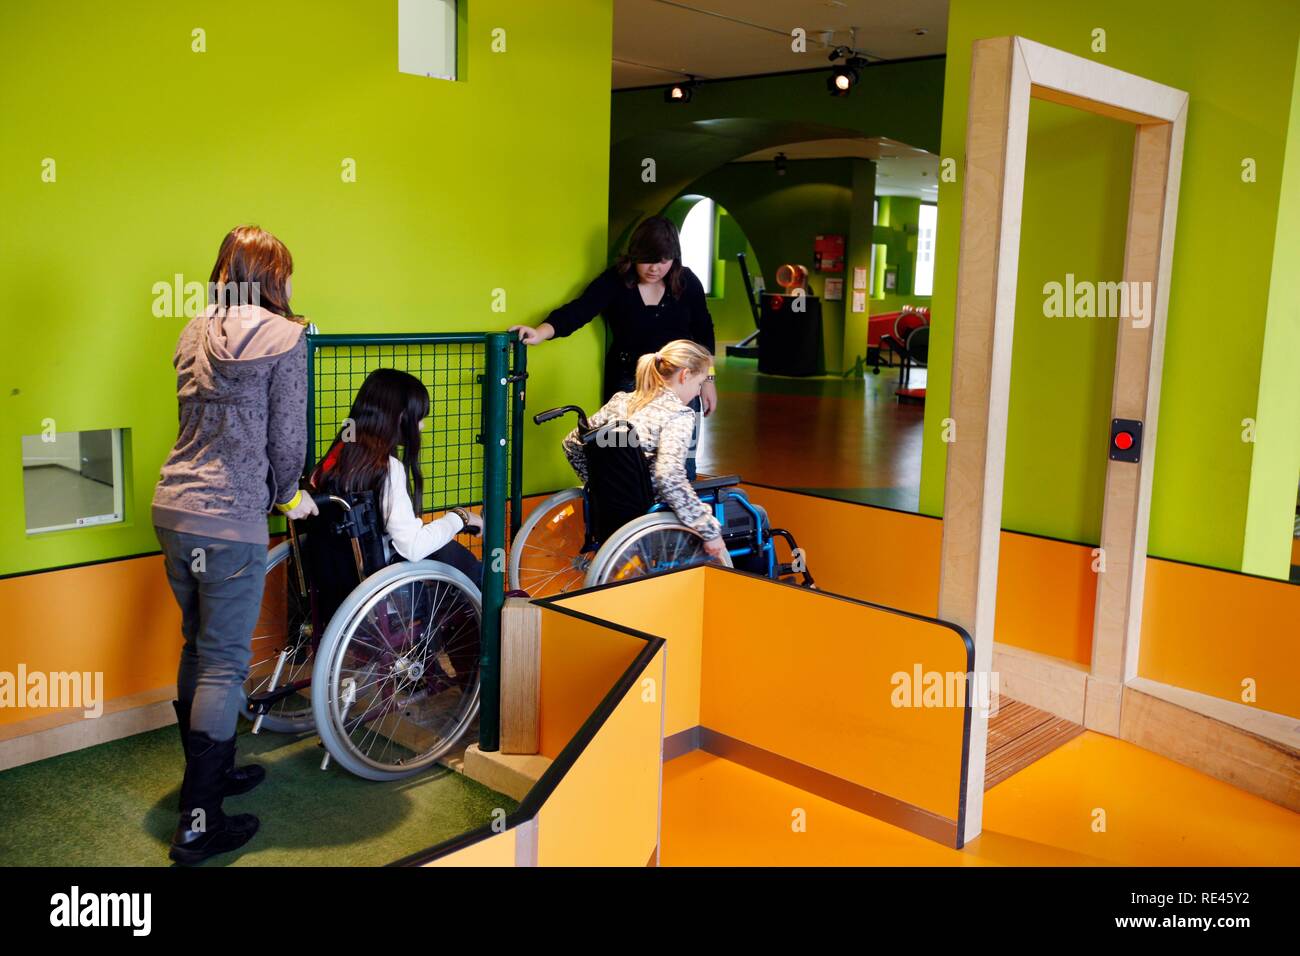 Haus der natur musée, bien sûr en fauteuil roulant, où les visiteurs peuvent faire l'expérience de se déplacer dans un fauteuil roulant Banque D'Images